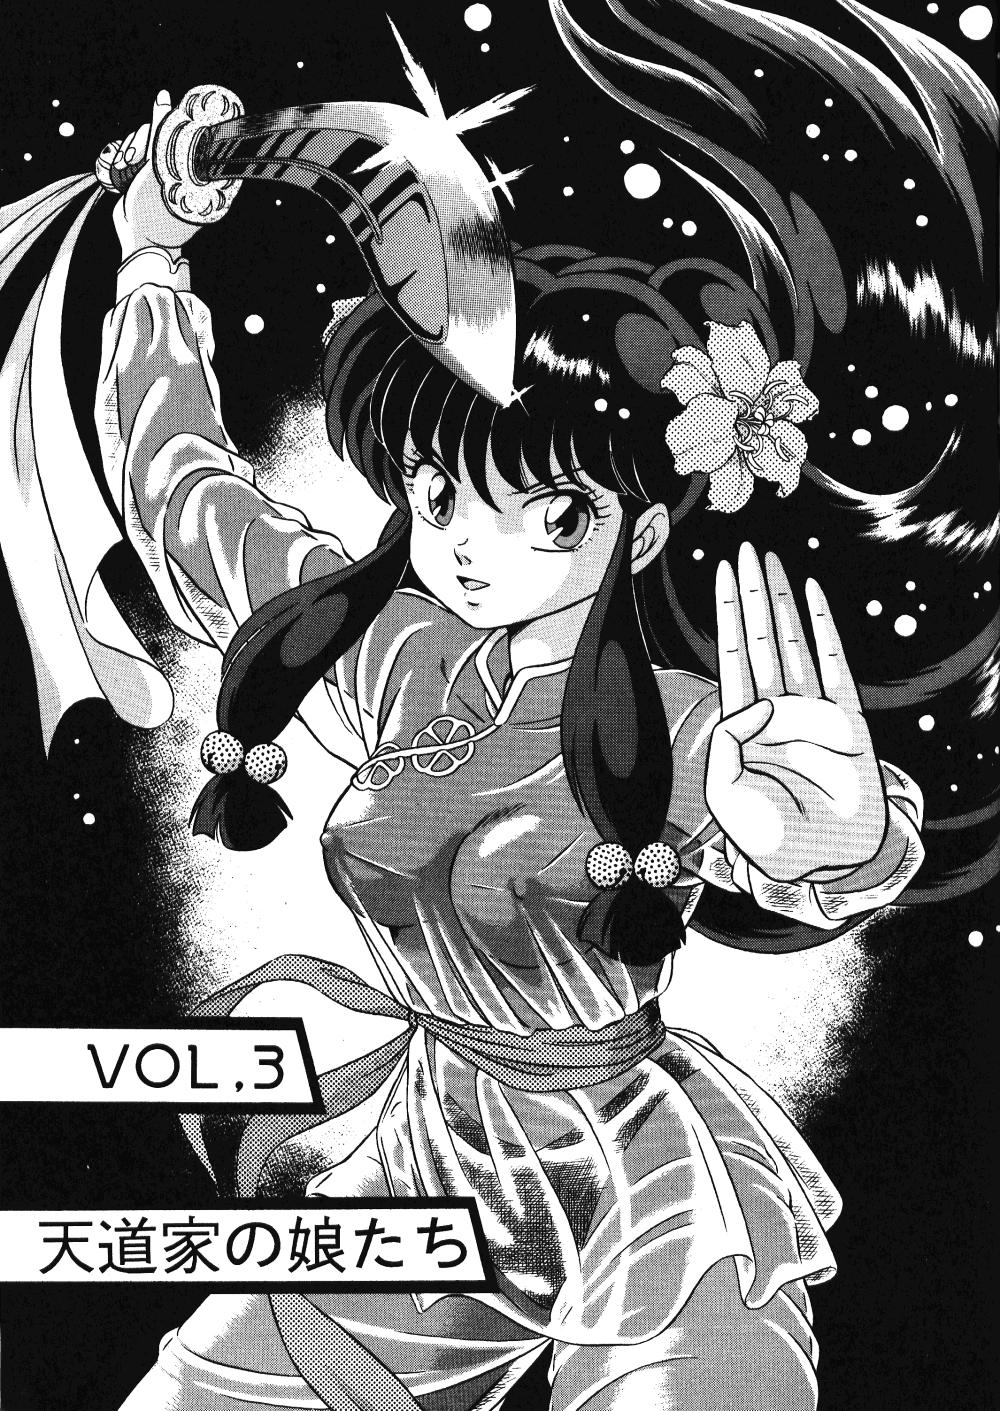 Bulge (C42) [Takashita-ya (Taya Takashi)] Tendou-ke No Musume-tachi Vol. 3 (Ranma 1/2) Ranma 12 Flash 2